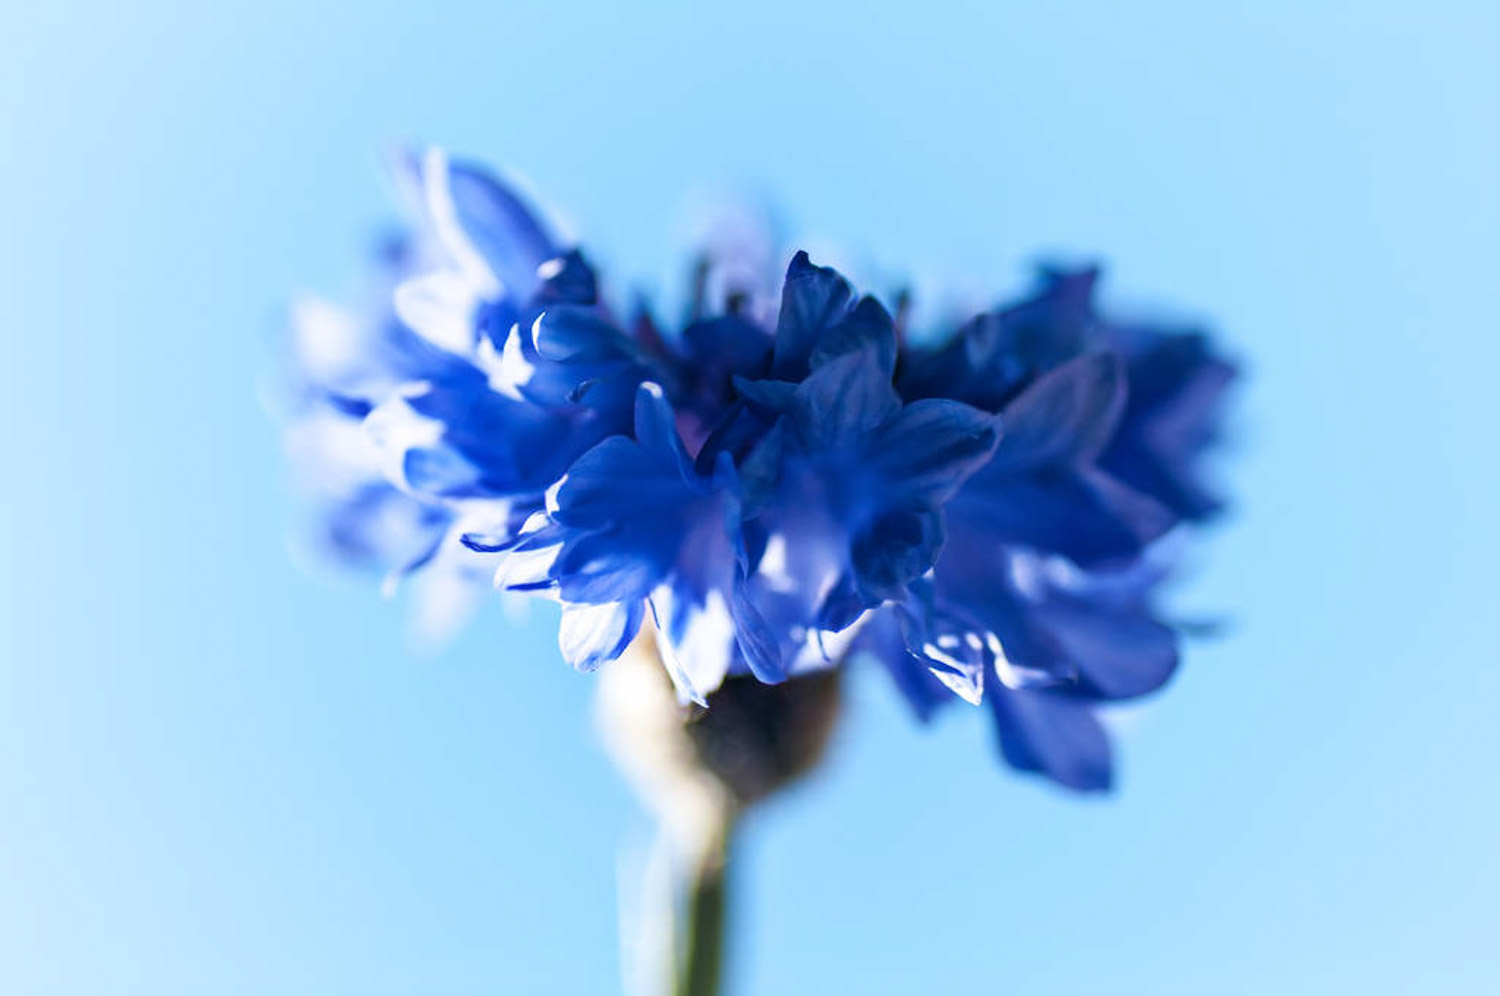 蓝色矢车菊的花语和寓意